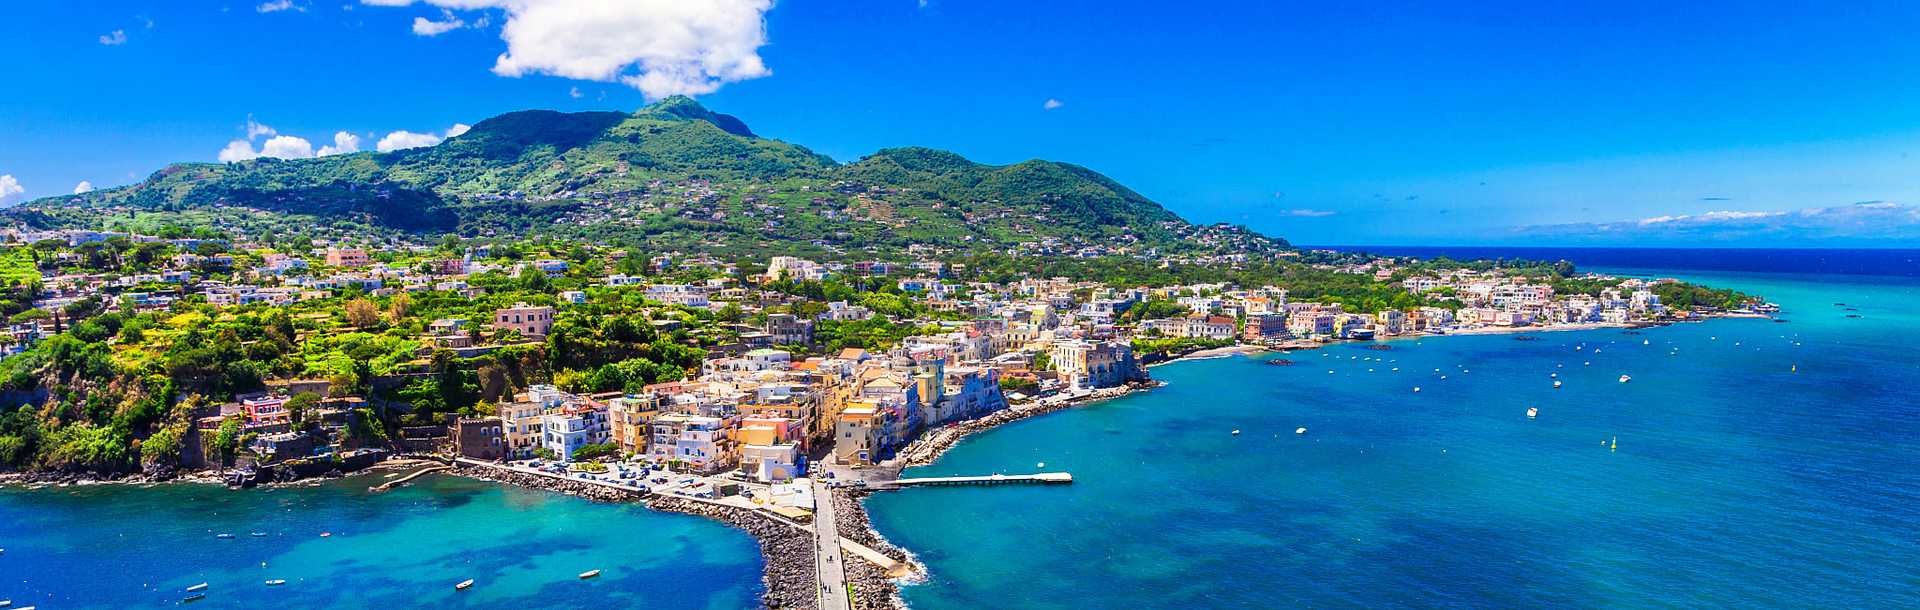 Ischia Island in Sicily, Italy